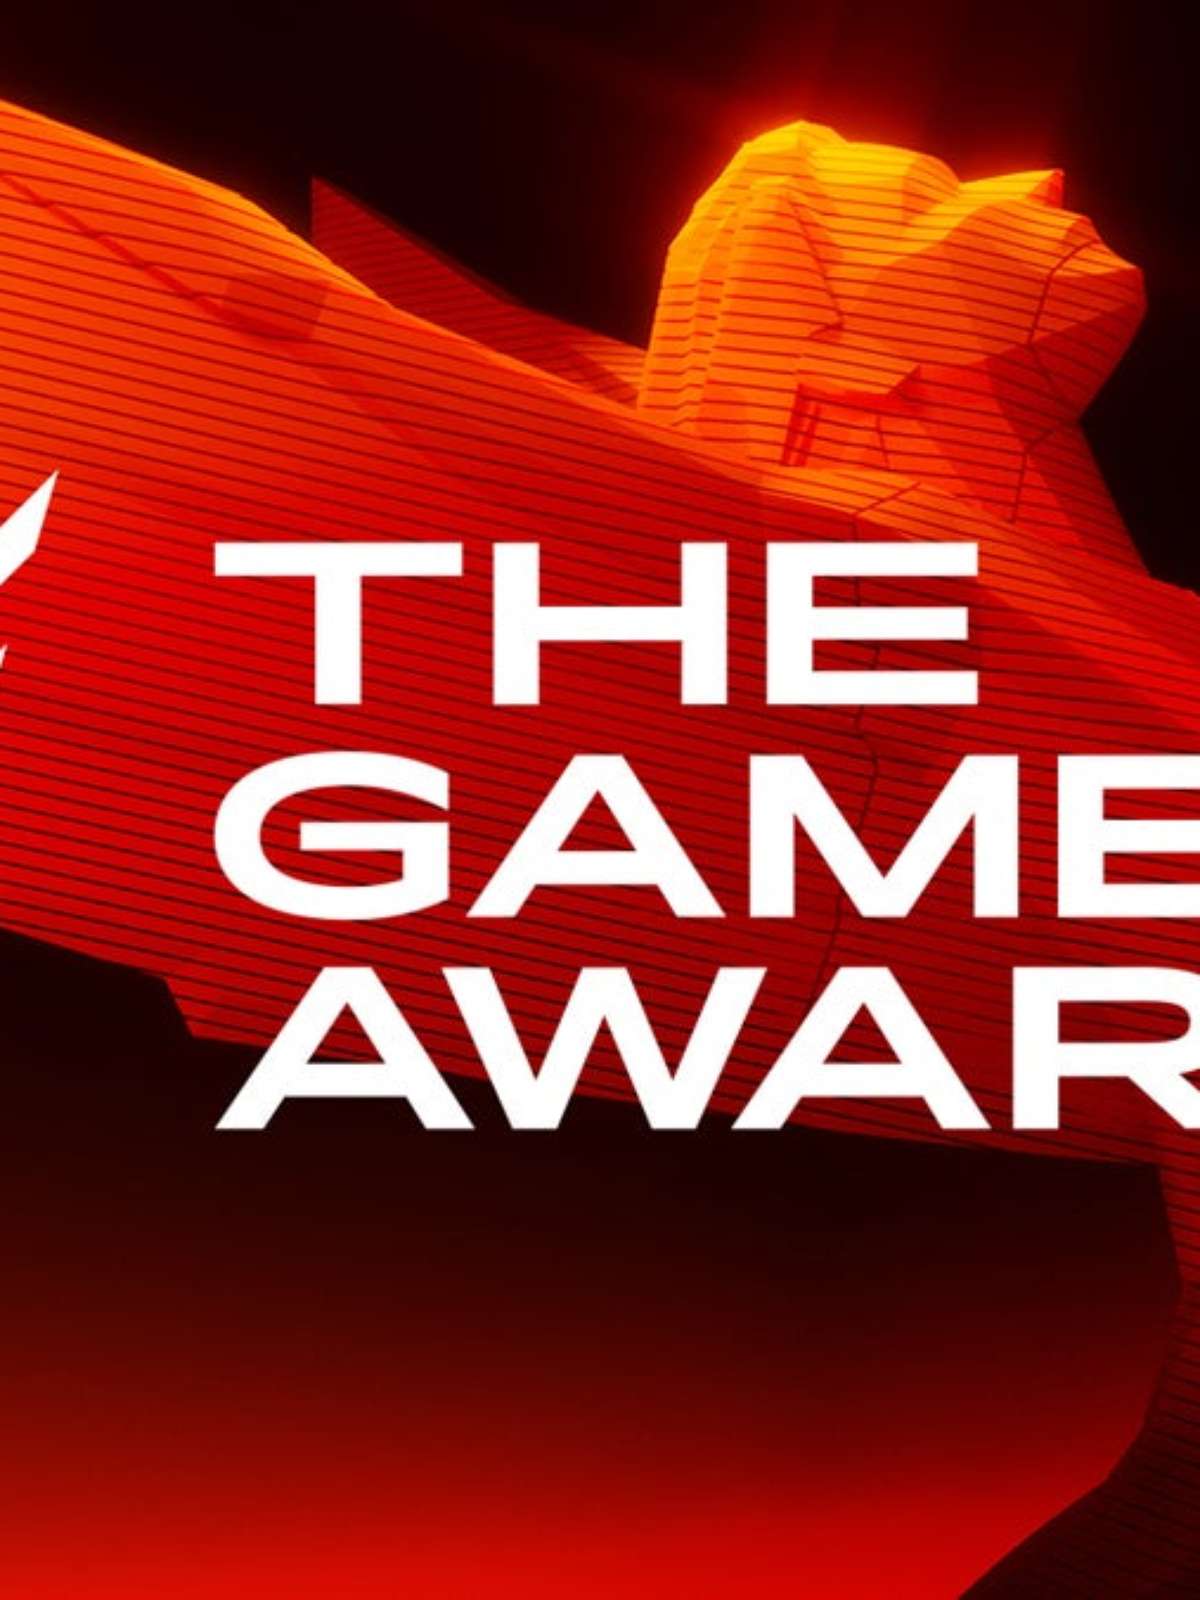 Veja a lista de indicados a Jogo do Ano no The Game Awards 2023